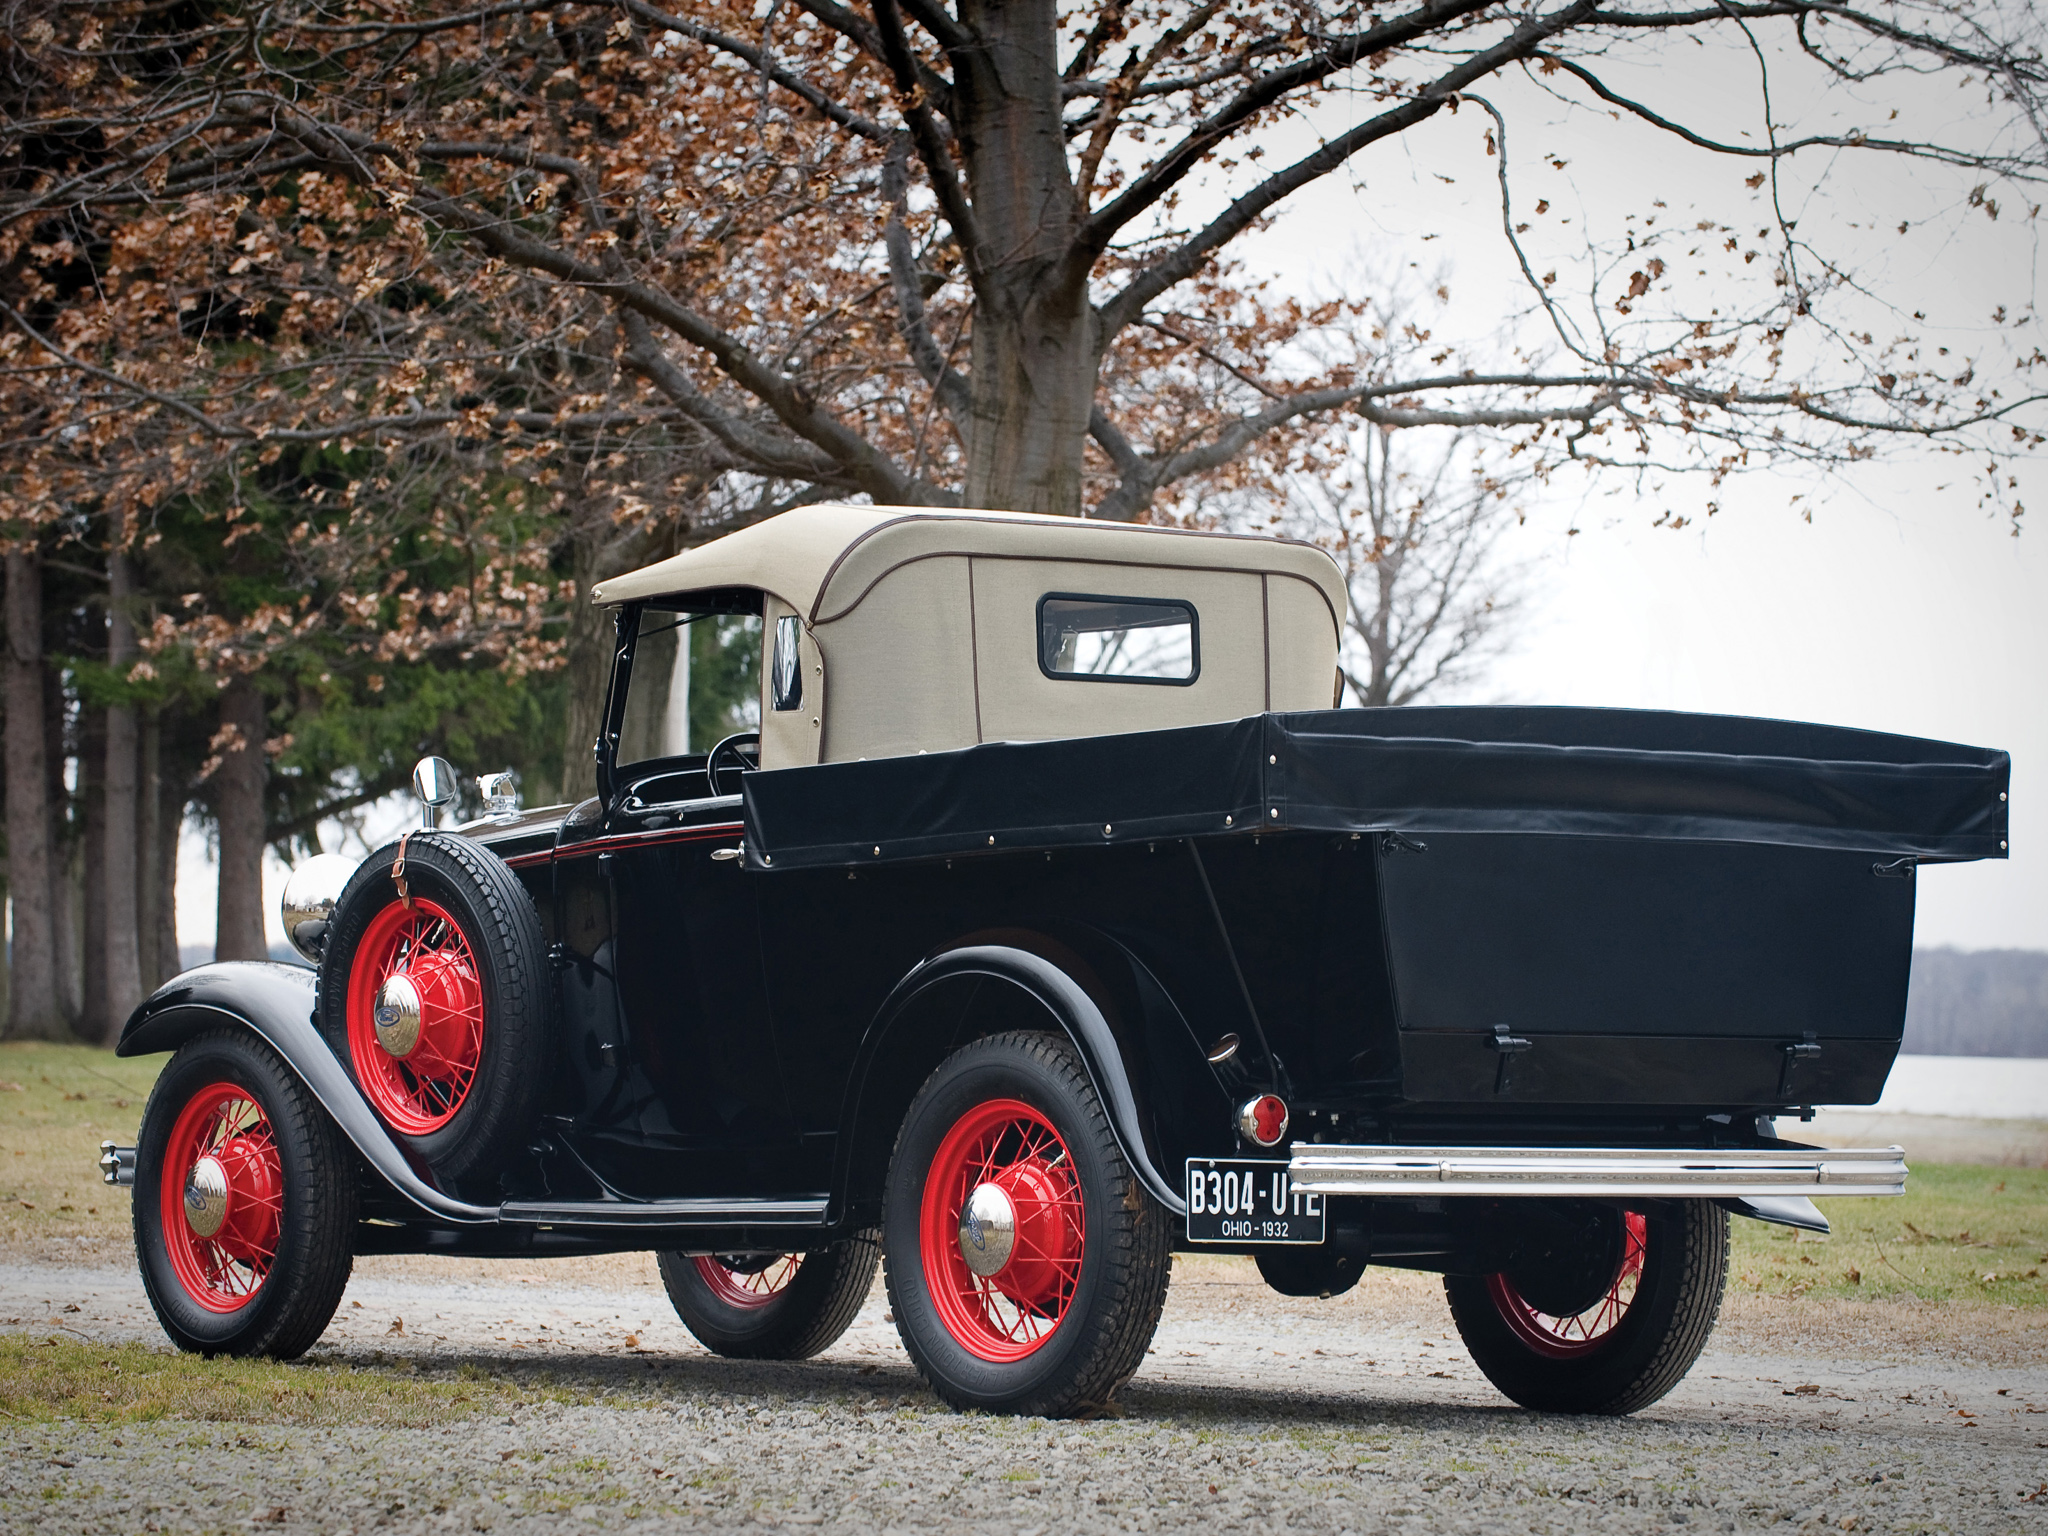 1932, Ford, Model b 304, Ute, Pickup, Retro Wallpaper